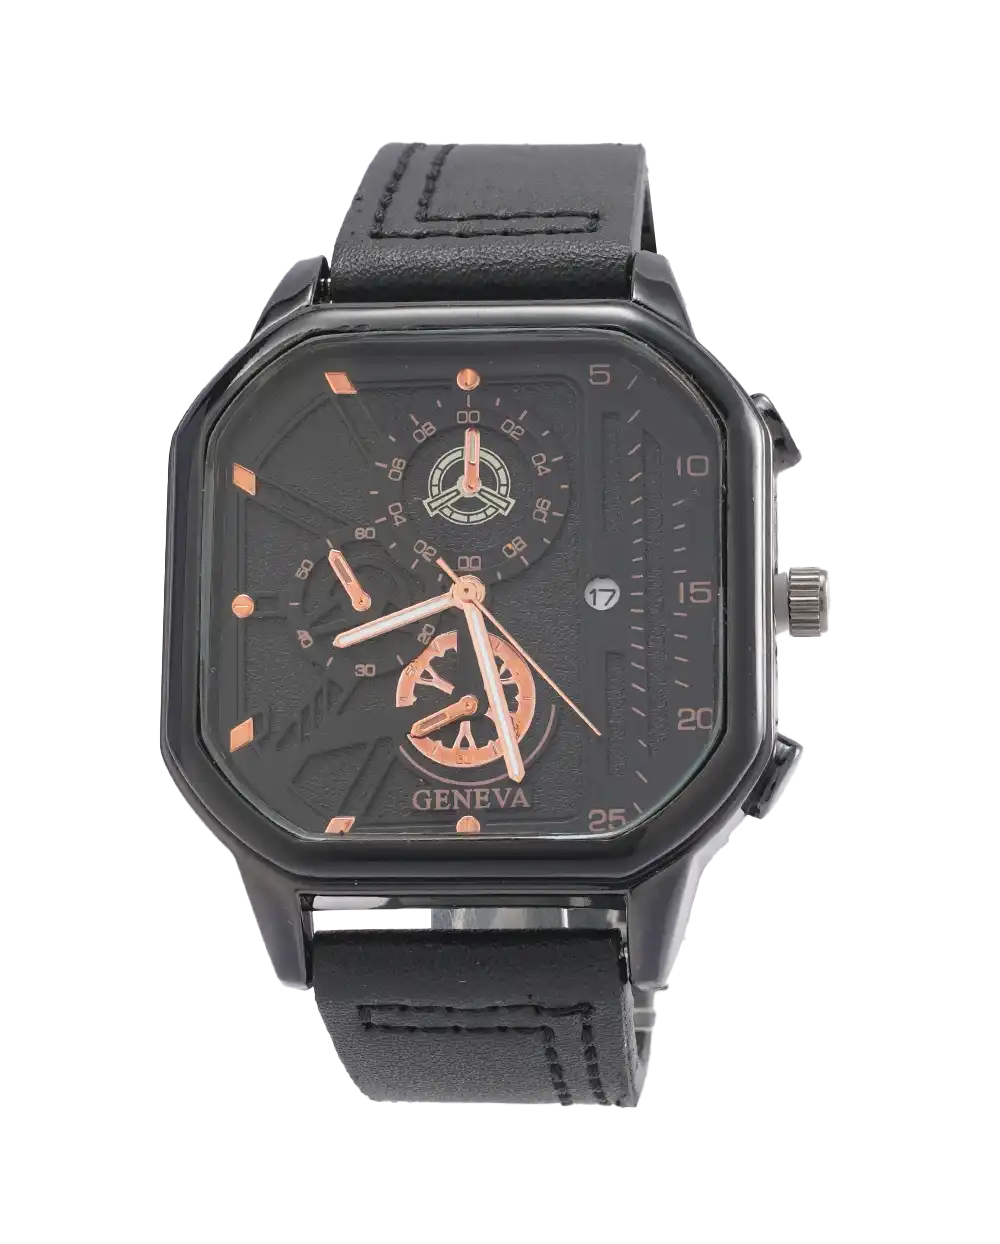 خرید ساعت مچی مردانه جینوا GENEVA طرح CUBE مدل 1799 رنگ مشکی با صفحه ی مکعبی و خاص با بهترین قیمت به همراه جعبه و ارسال رایگان به سراسر ایران